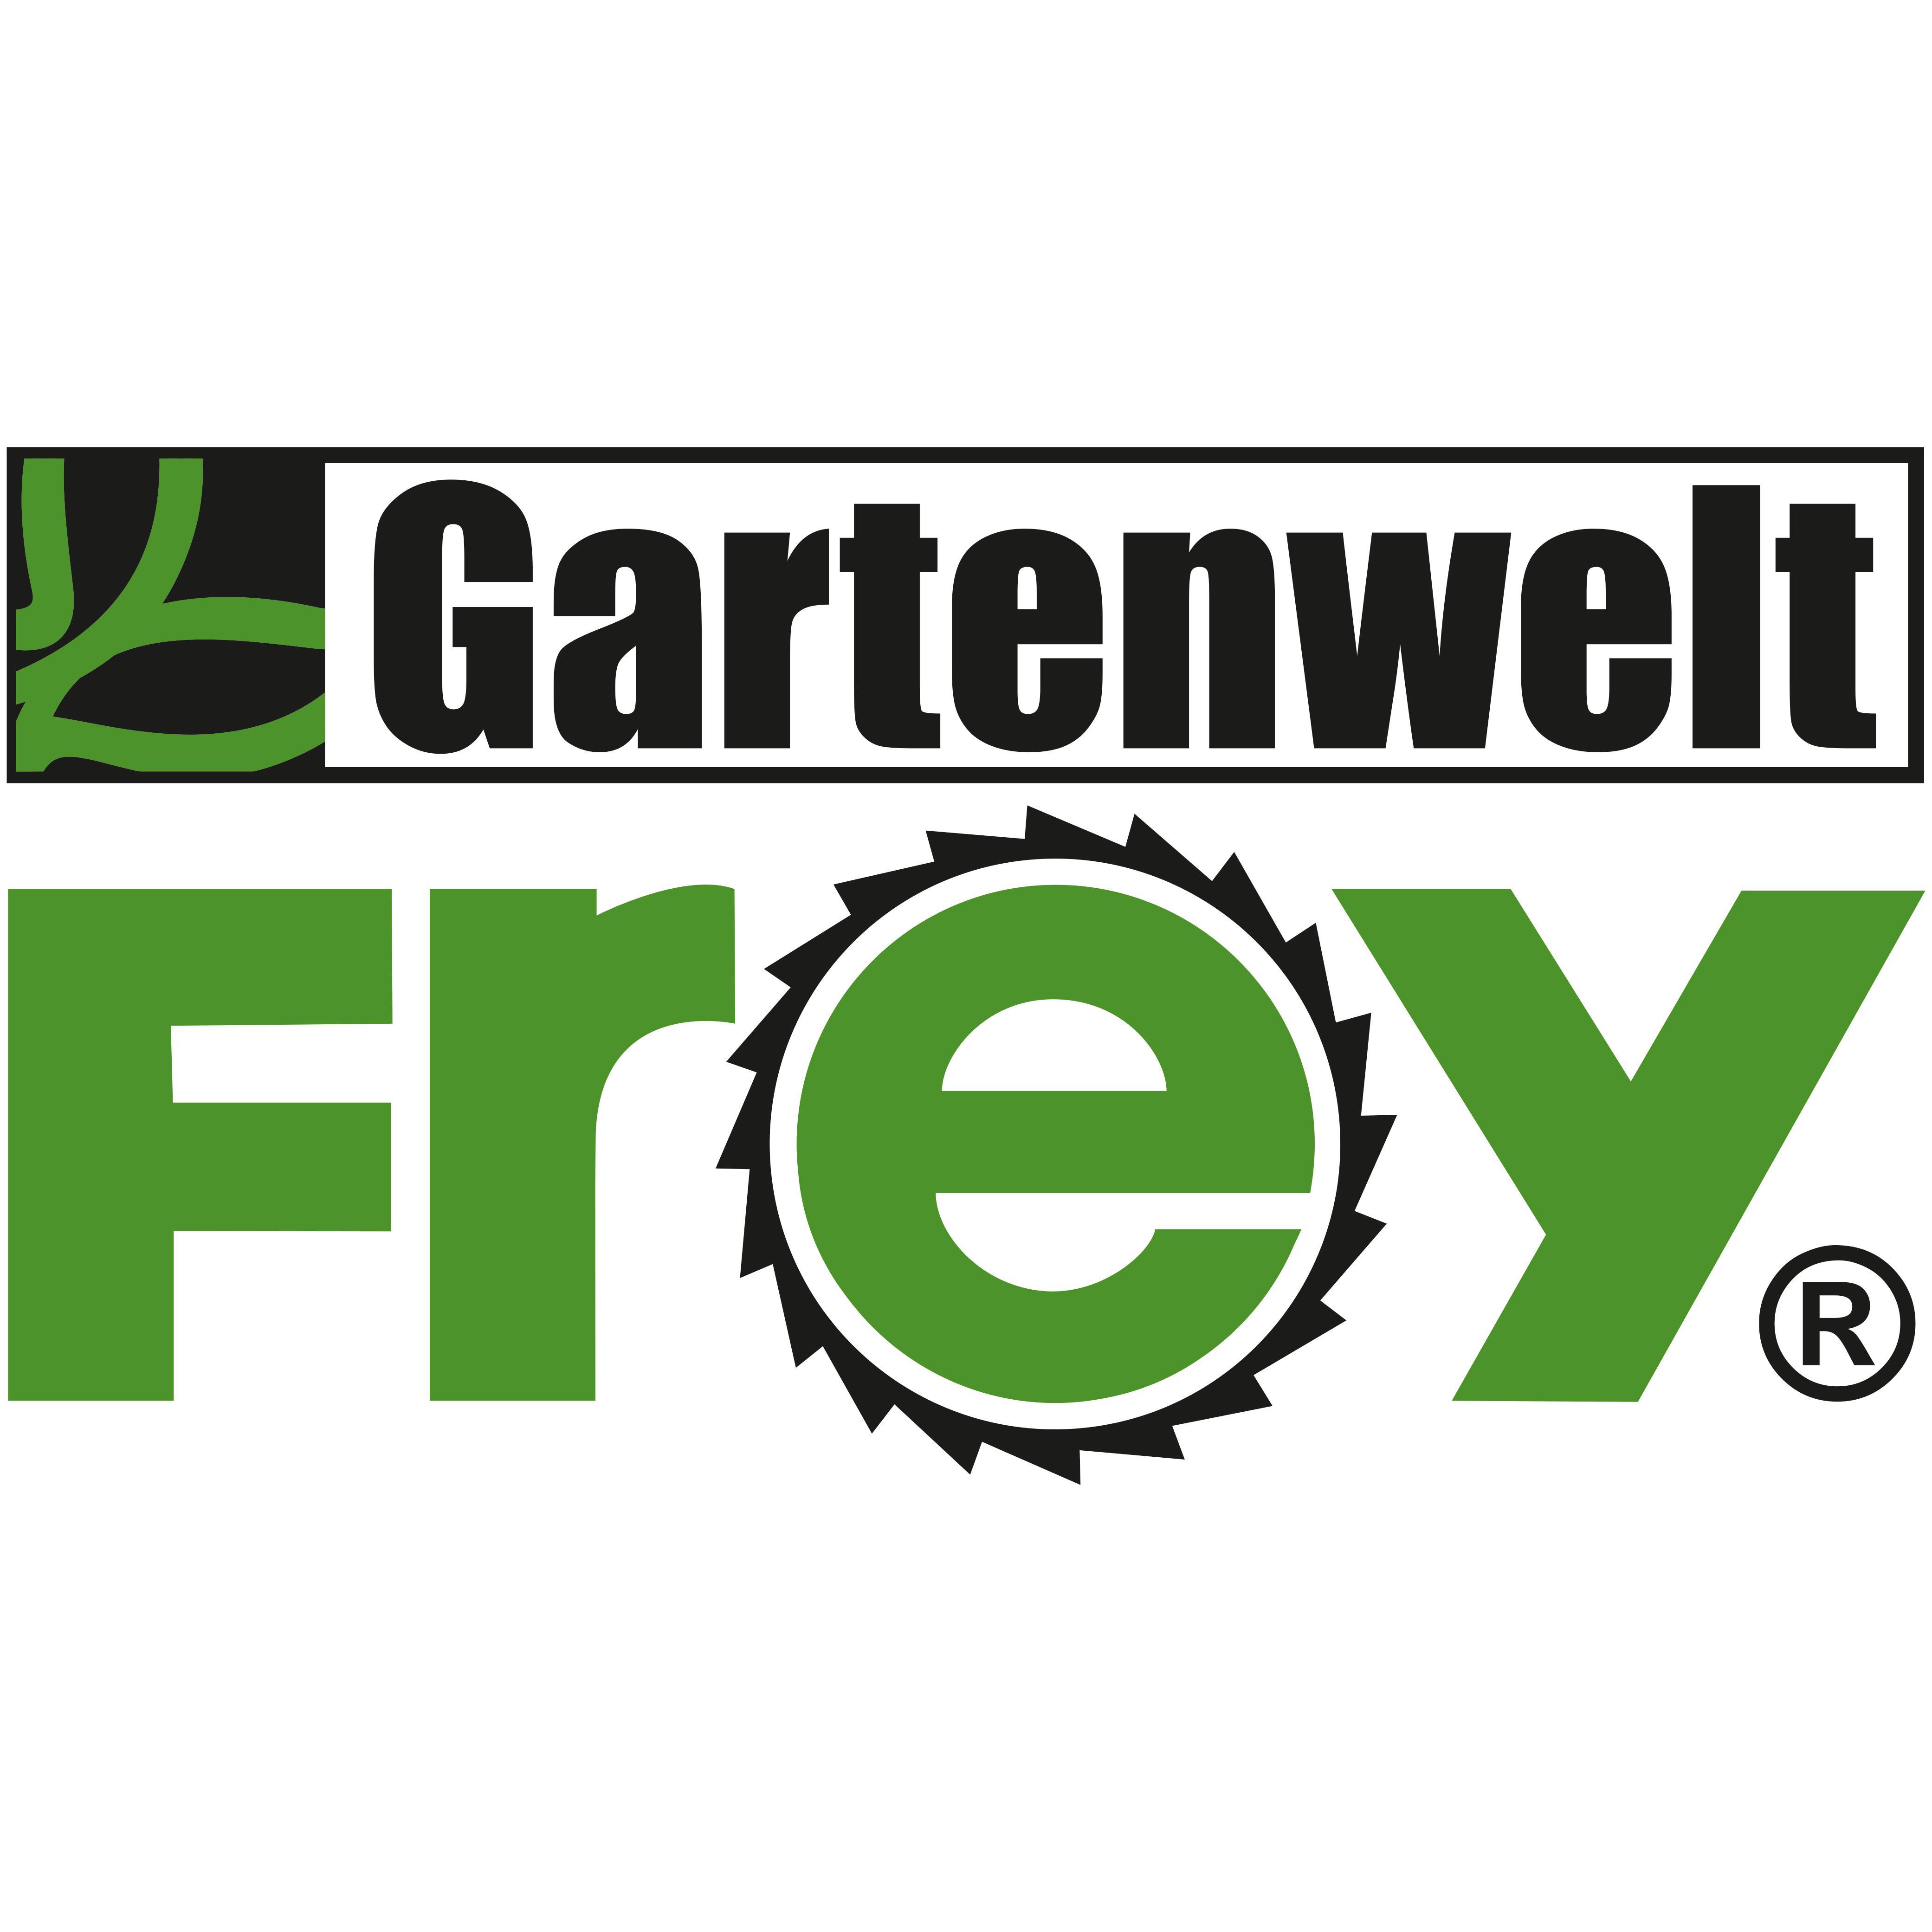 Gartenwelt Frey GmbH & Co. KG in Dernbach bei Dierdorf - Logo